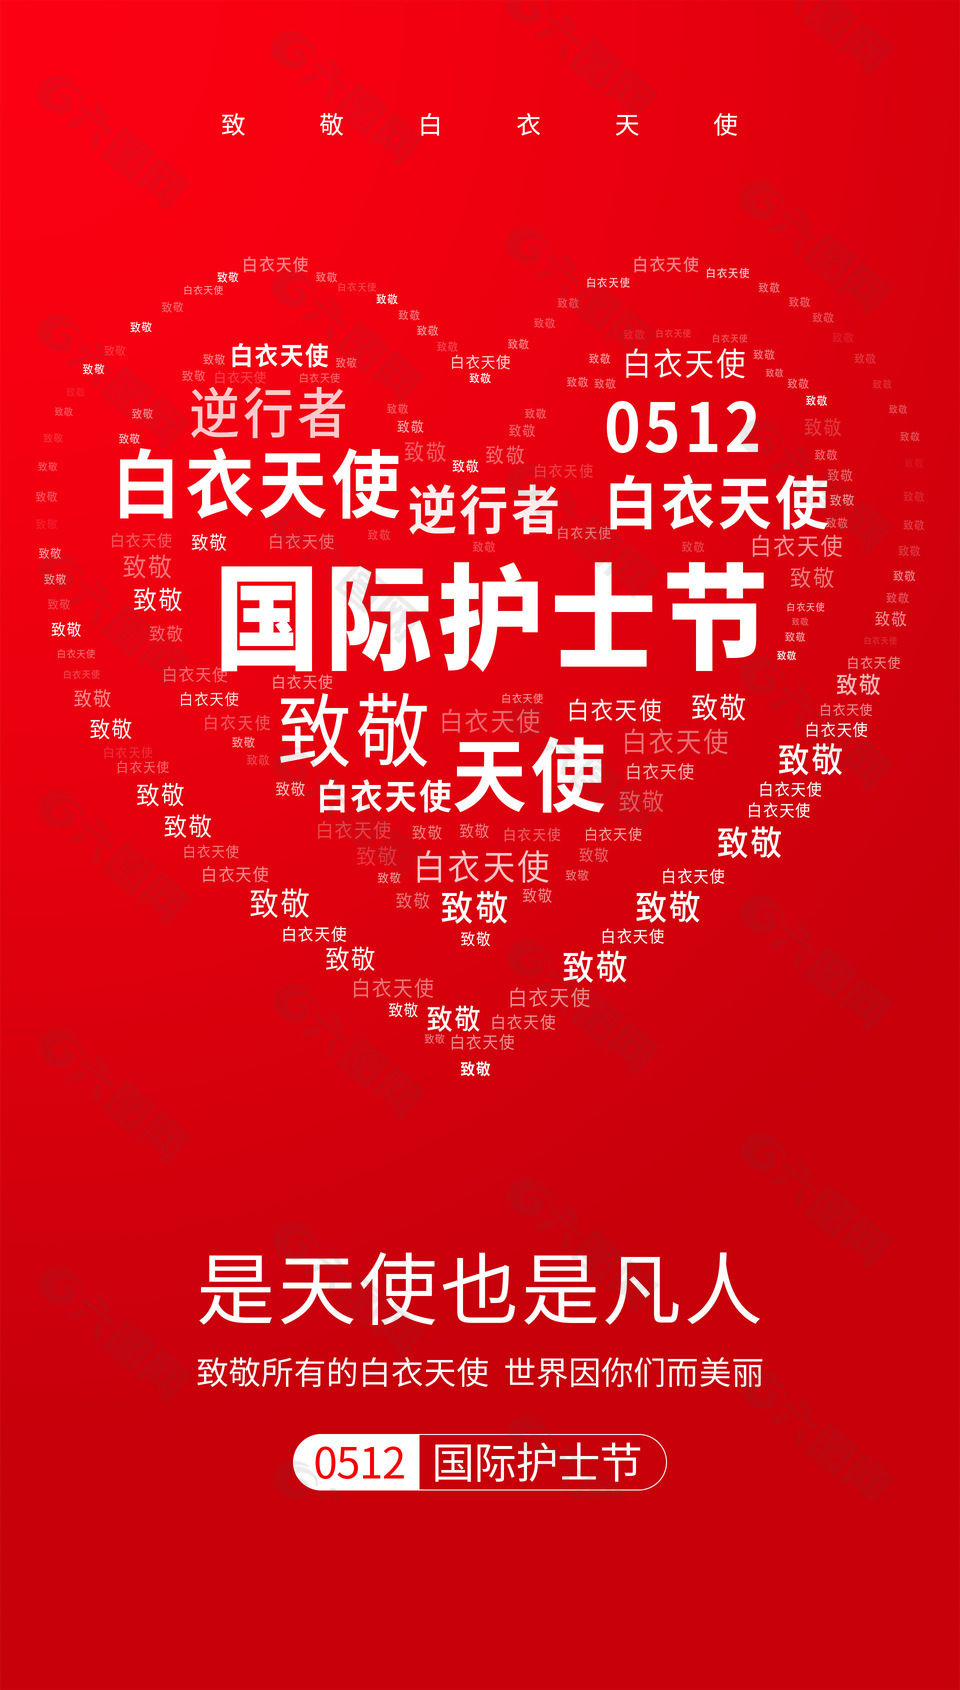 国际护士节红色大气背景致敬主题海报